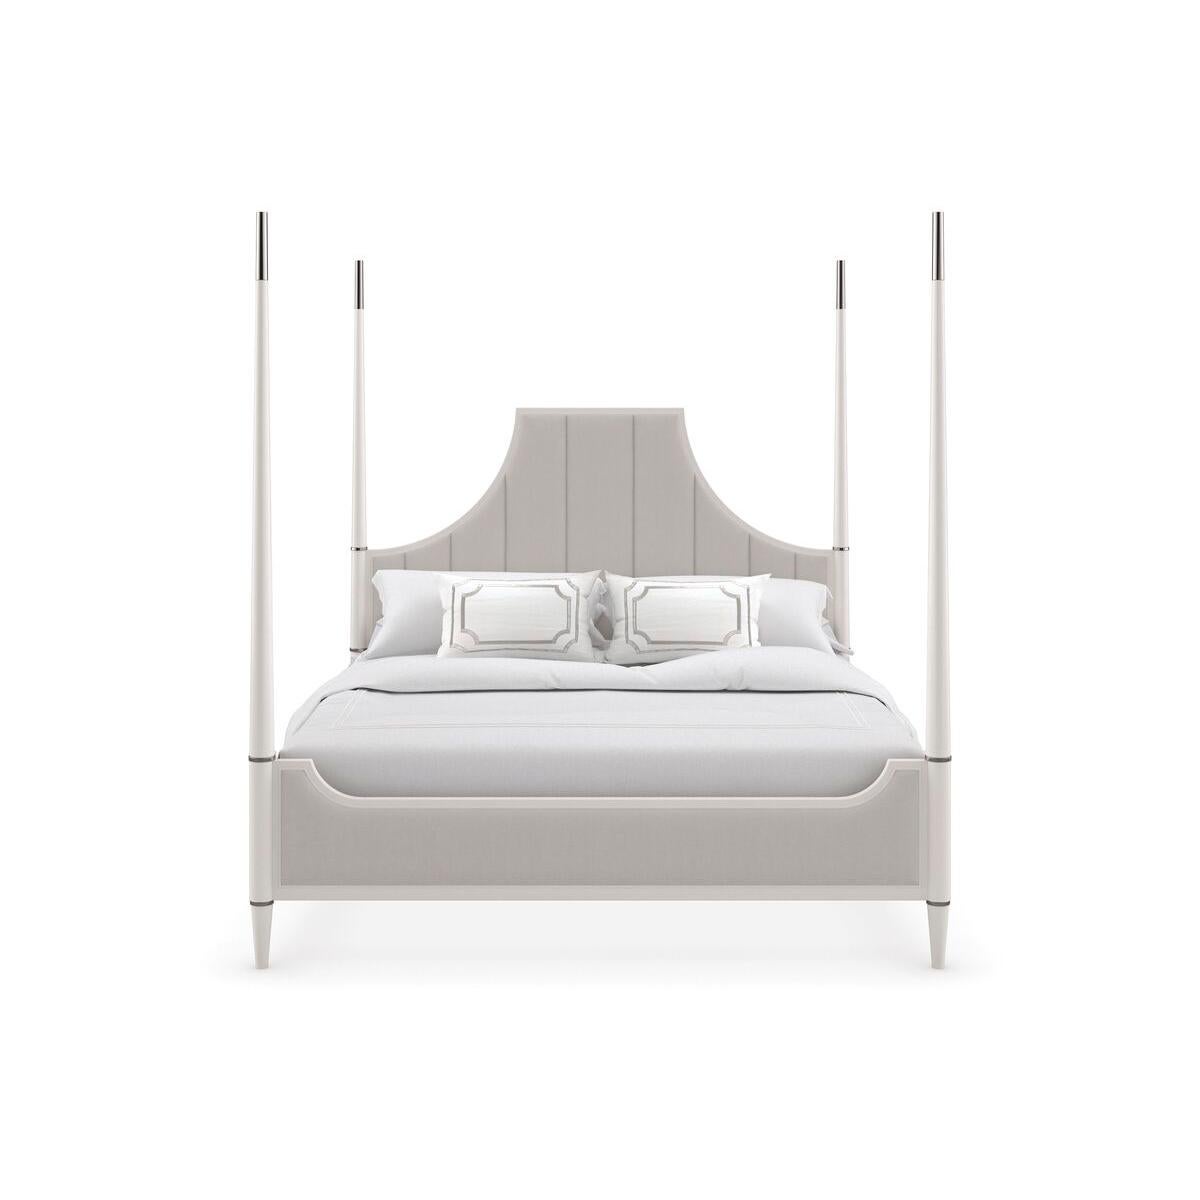 Dieses klassische Bett mit traditionellem Unterton bietet ein elegantes und stattliches Design, das eine raffinierte Mischung aus modernen und klassischen Elementen darstellt. Das Bett verfügt über ein einzigartiges, hochlehniges Kopfteil im Stil